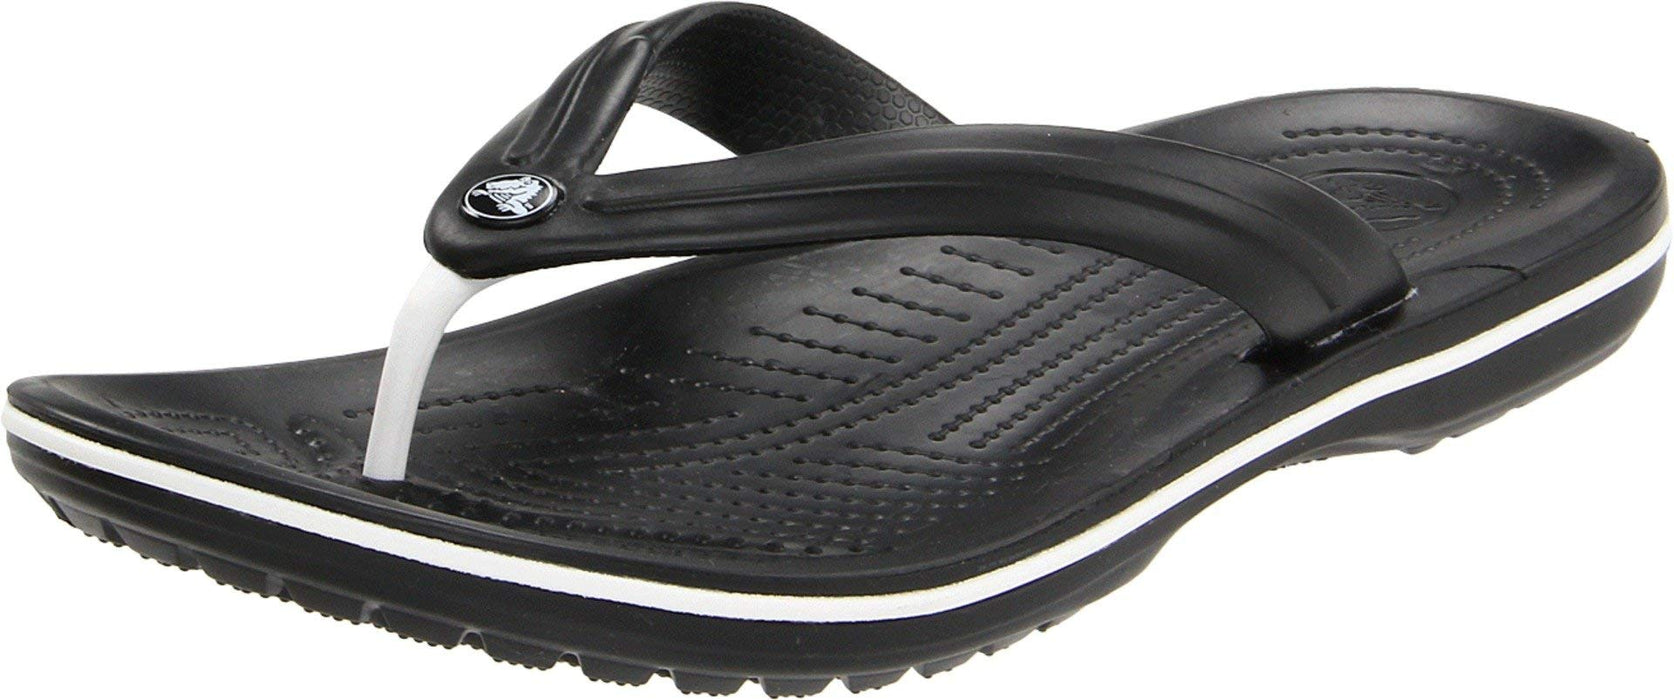 Crocs Crocband Flip-Sandalen – Unisex Flip-Sandalen für Erwachsene – Wasserdichte, schnell trocknende Flip-Flops – Schwarz – Größe 37-38